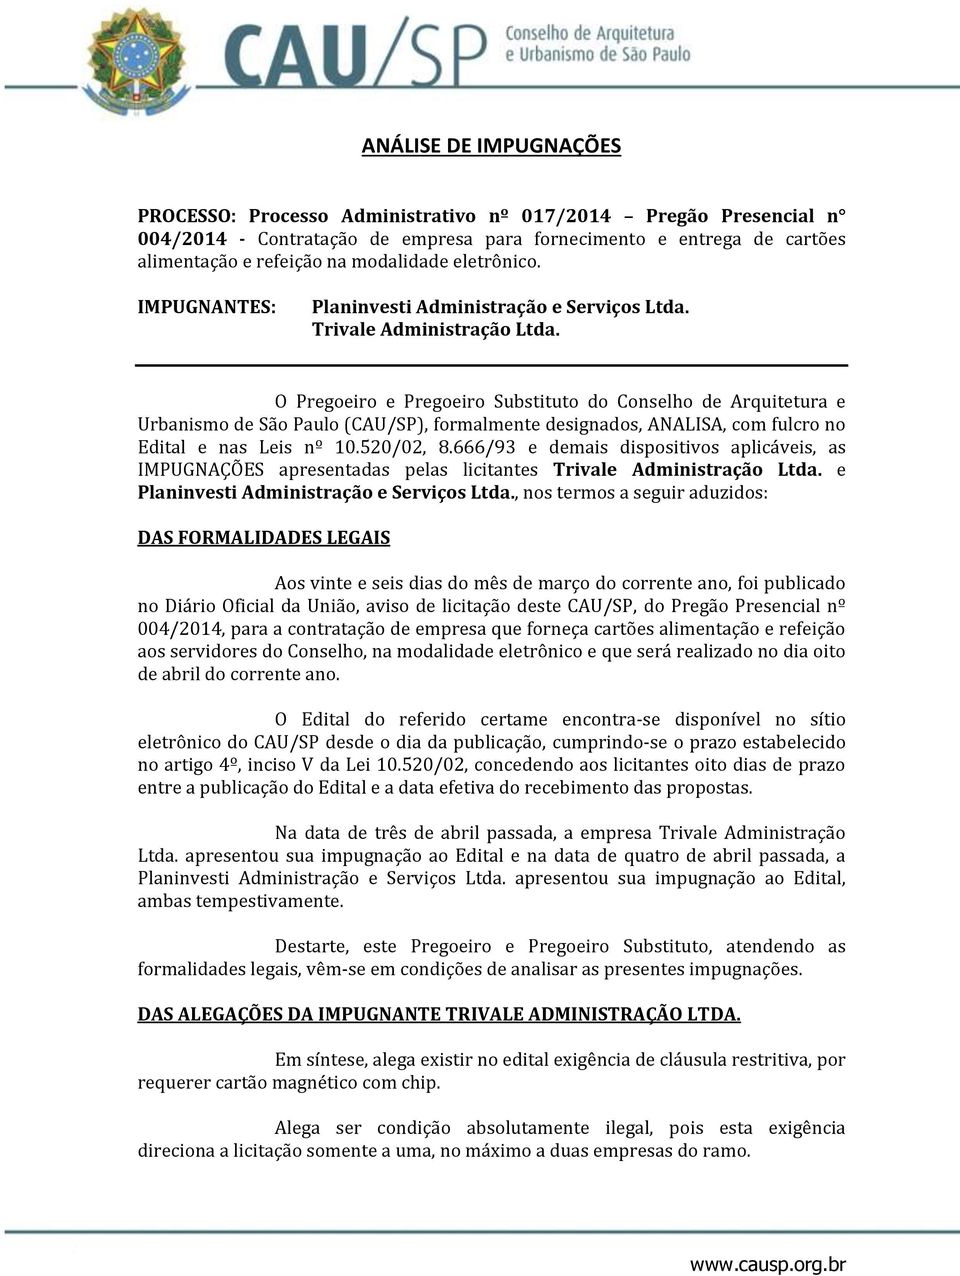 O Pregoeiro e Pregoeiro Substituto do Conselho de Arquitetura e Urbanismo de São Paulo (CAU/SP), formalmente designados, ANALISA, com fulcro no Edital e nas Leis nº 10.520/02, 8.